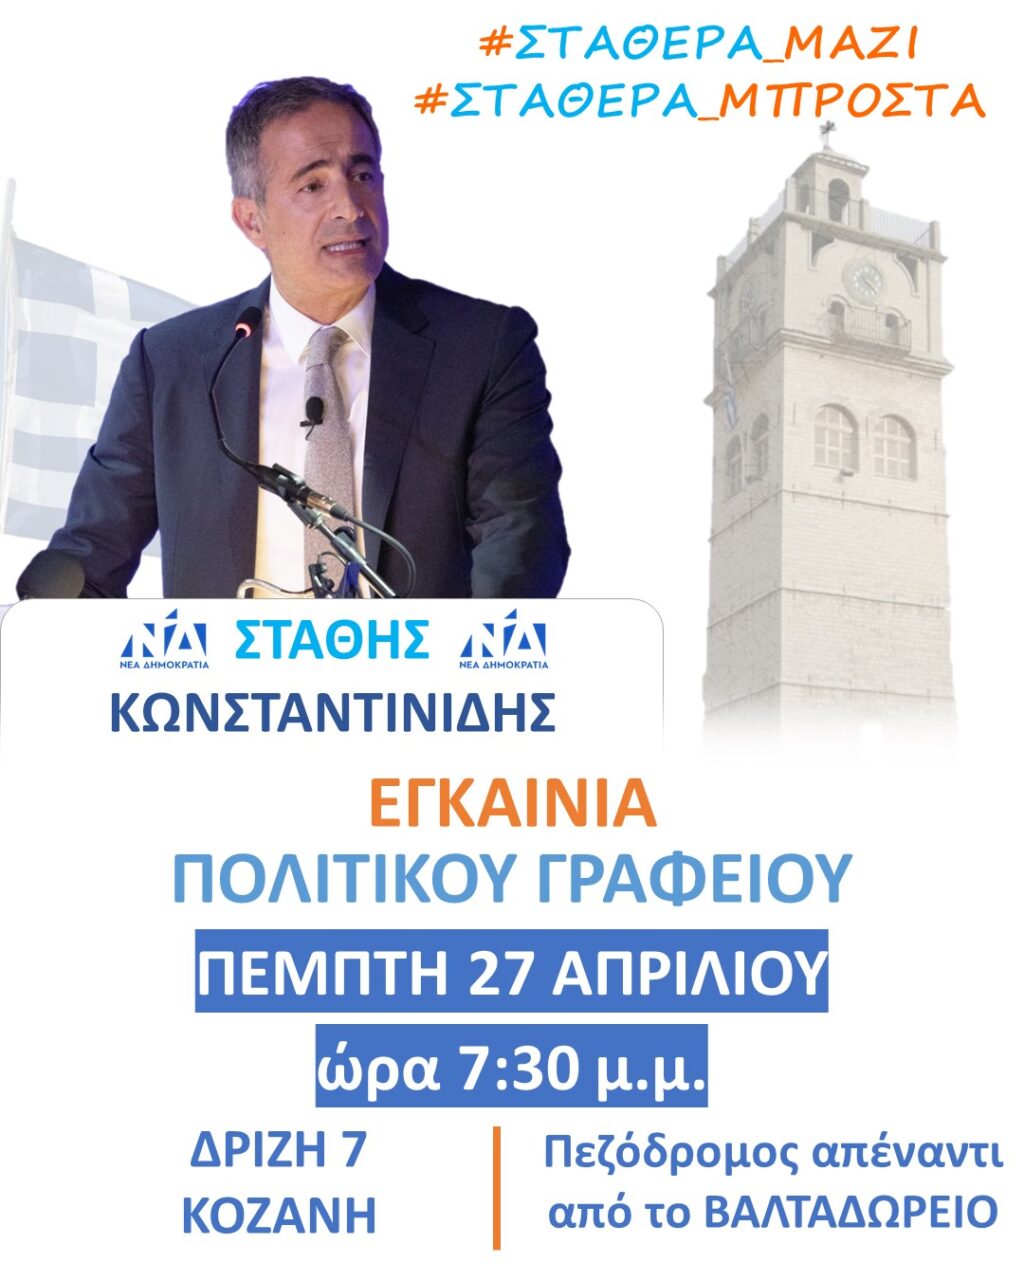 Πρόσκληση για τα εγκαίνια του πολιτικού του γραφείου, από τον Στάθη Κωνσταντινίδη, υποψήφιο βουλευτή Ν. Κοζάνης με τη Νέα Δημοκρατία.